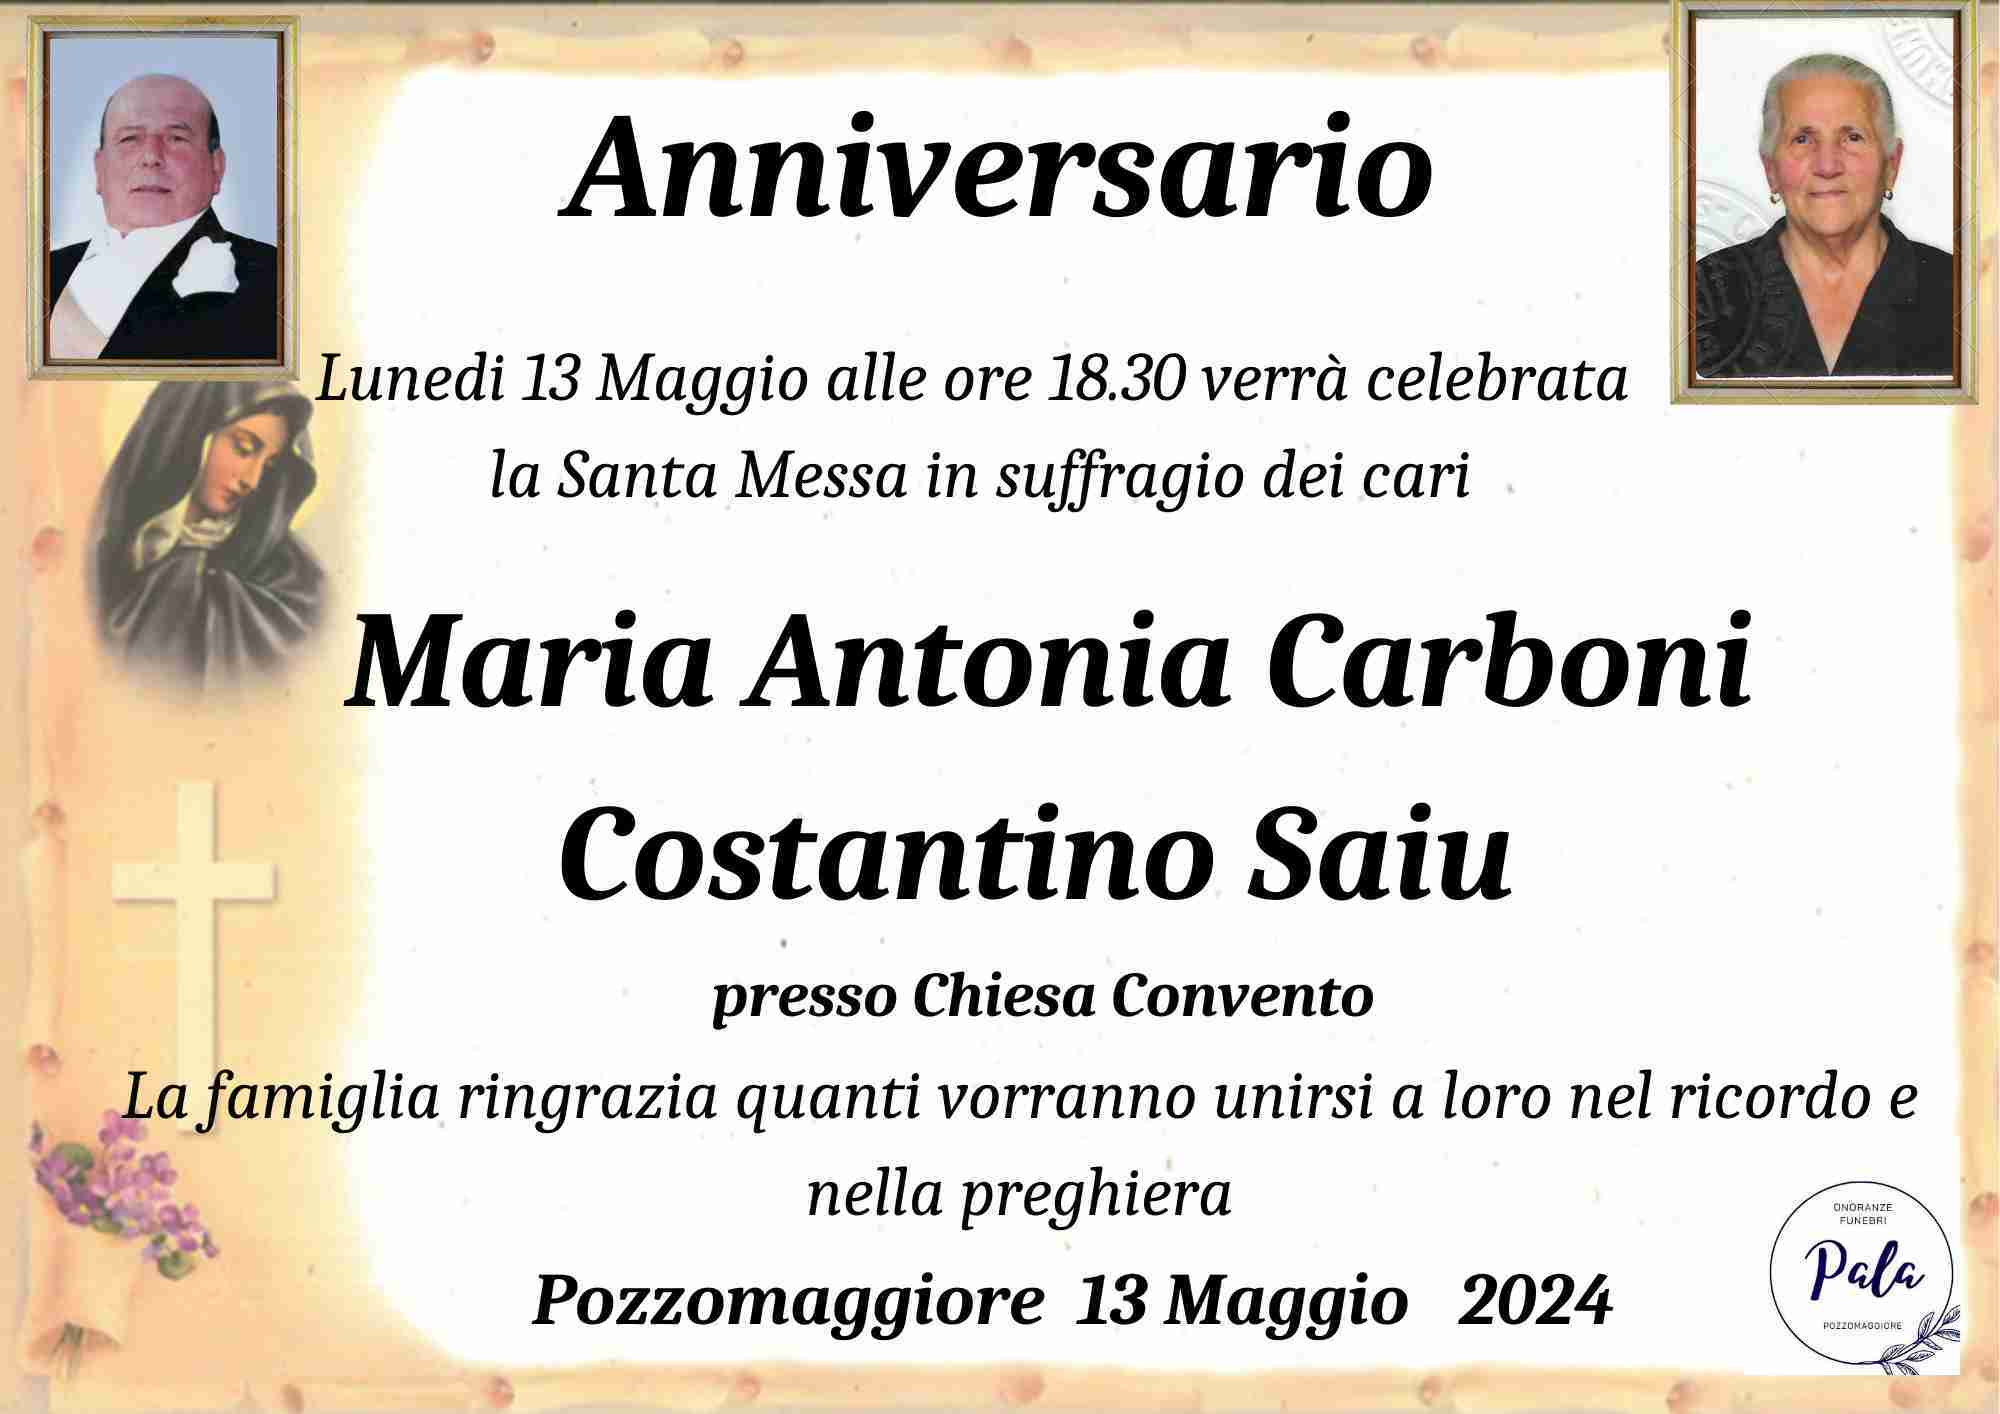 Maria Antonia Carboni / Costantino Saiu